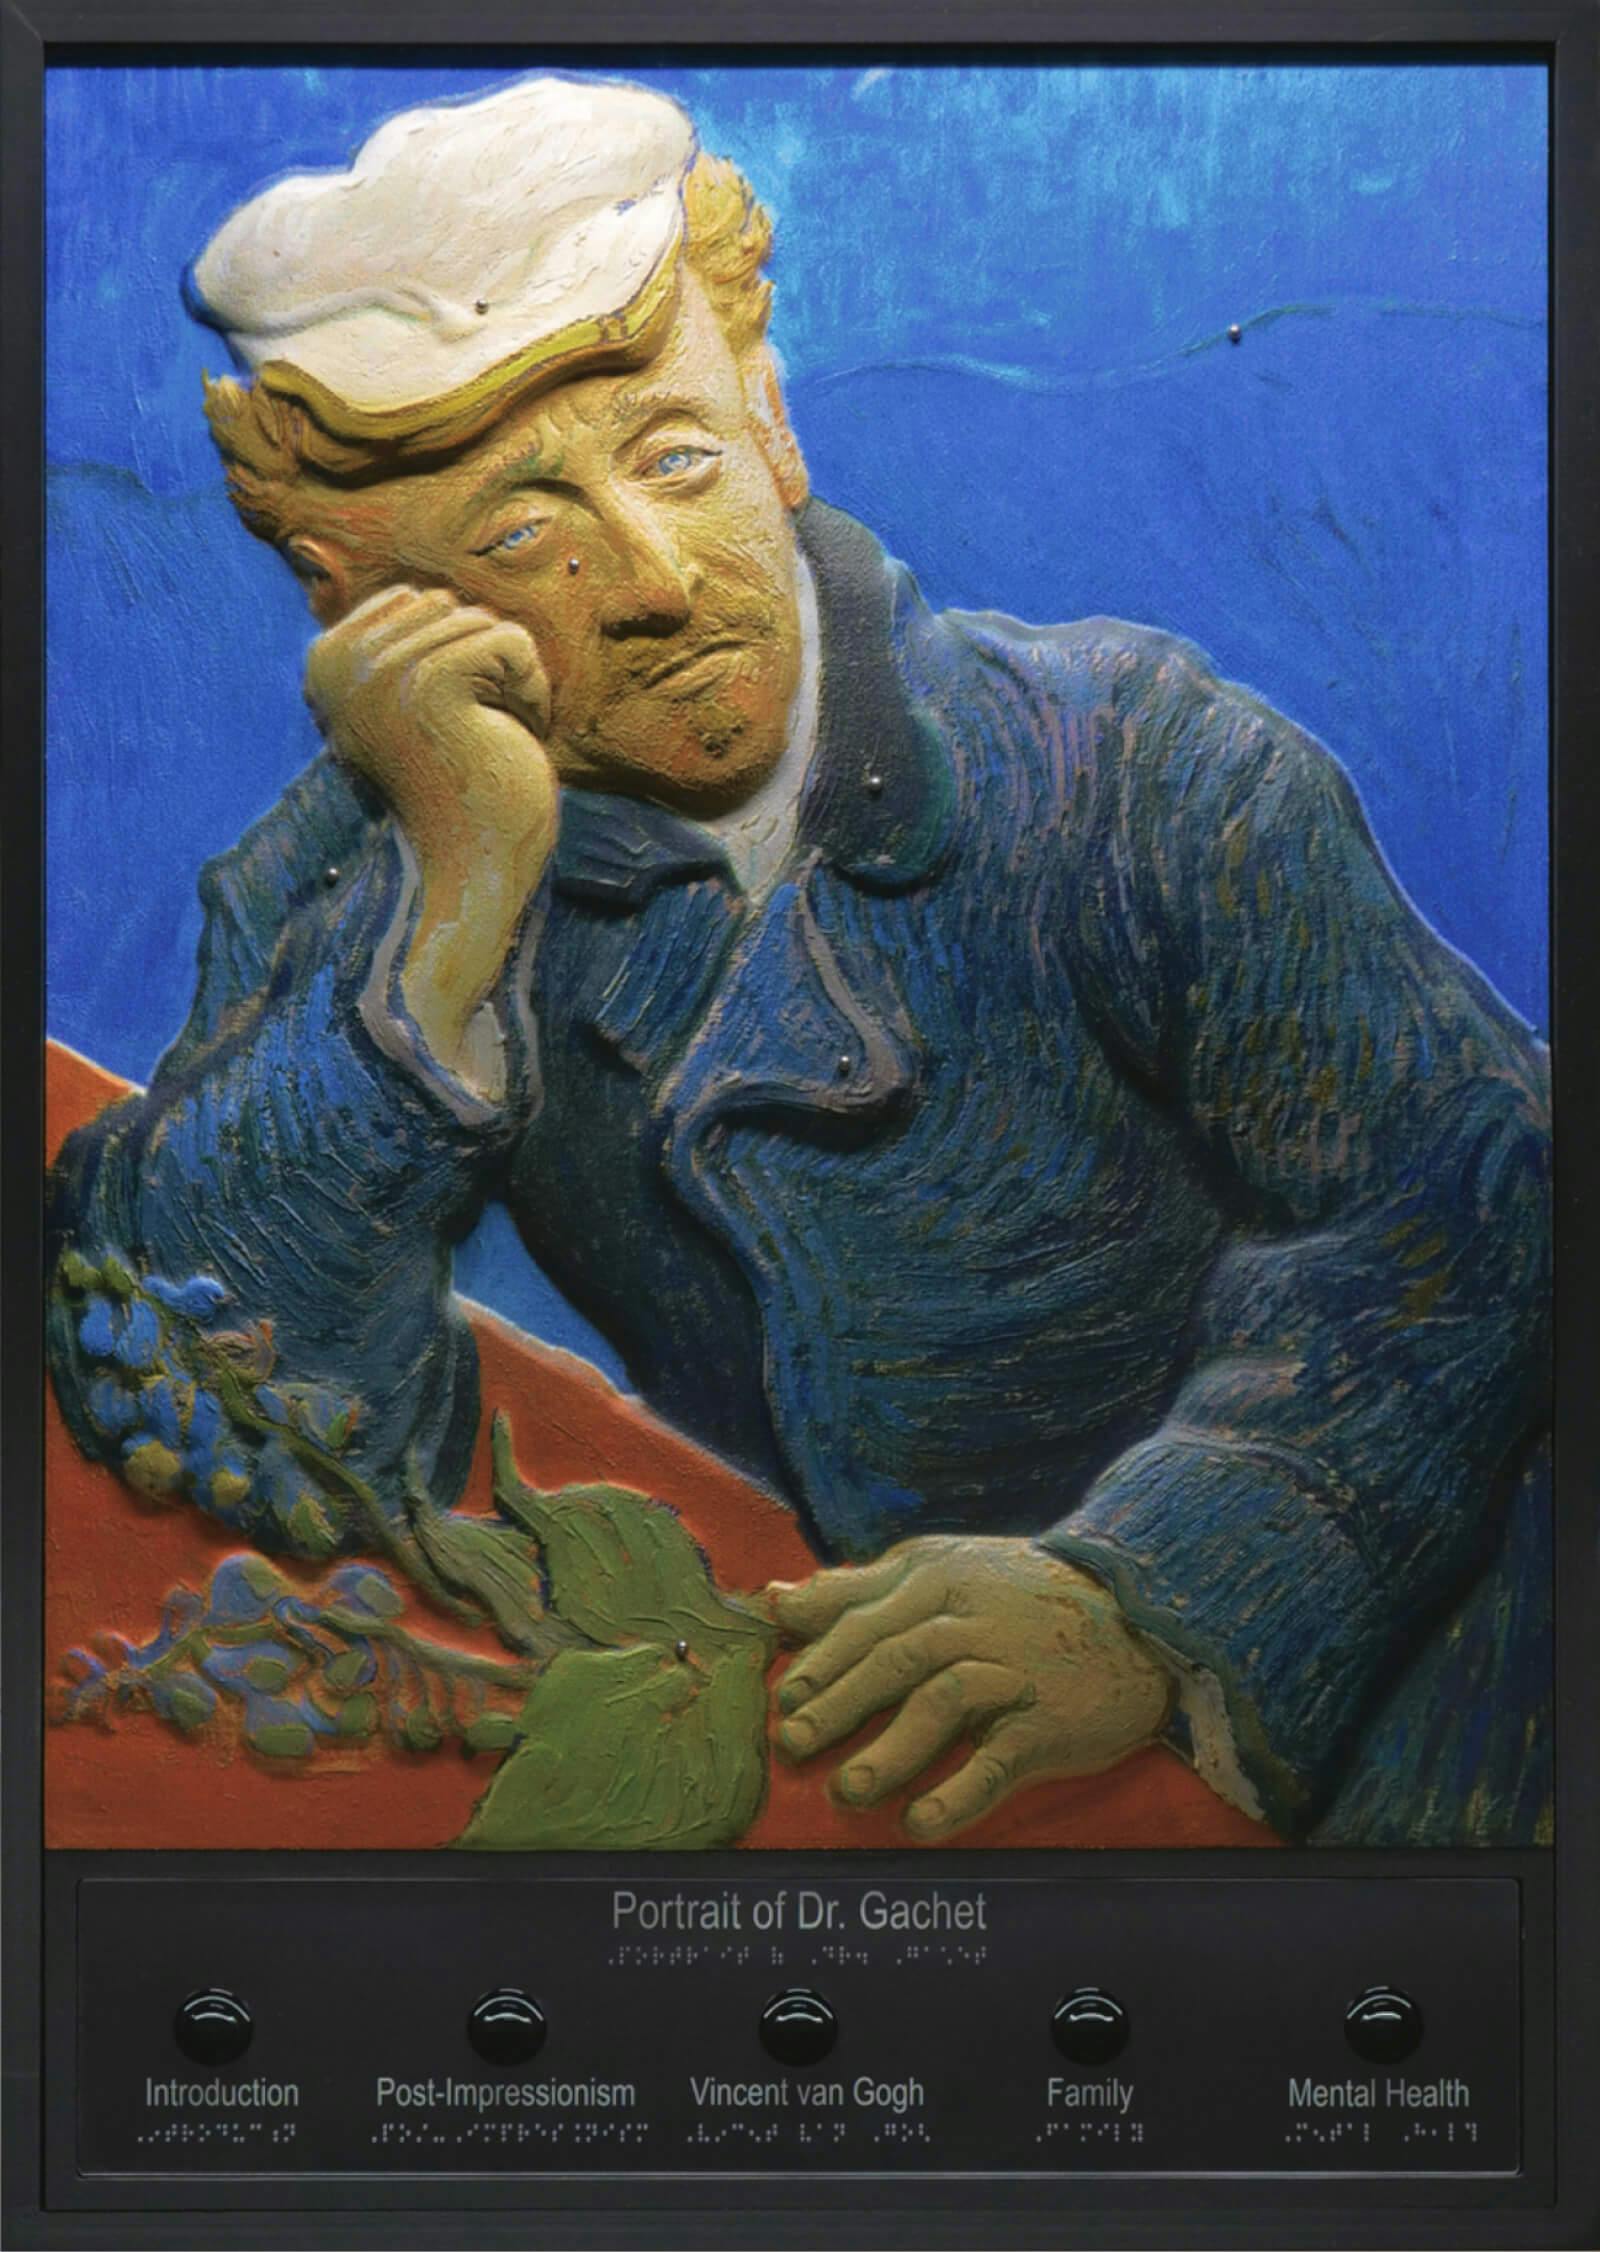 Tactile version of Van Gogh's Portrait of Dr. Gachet